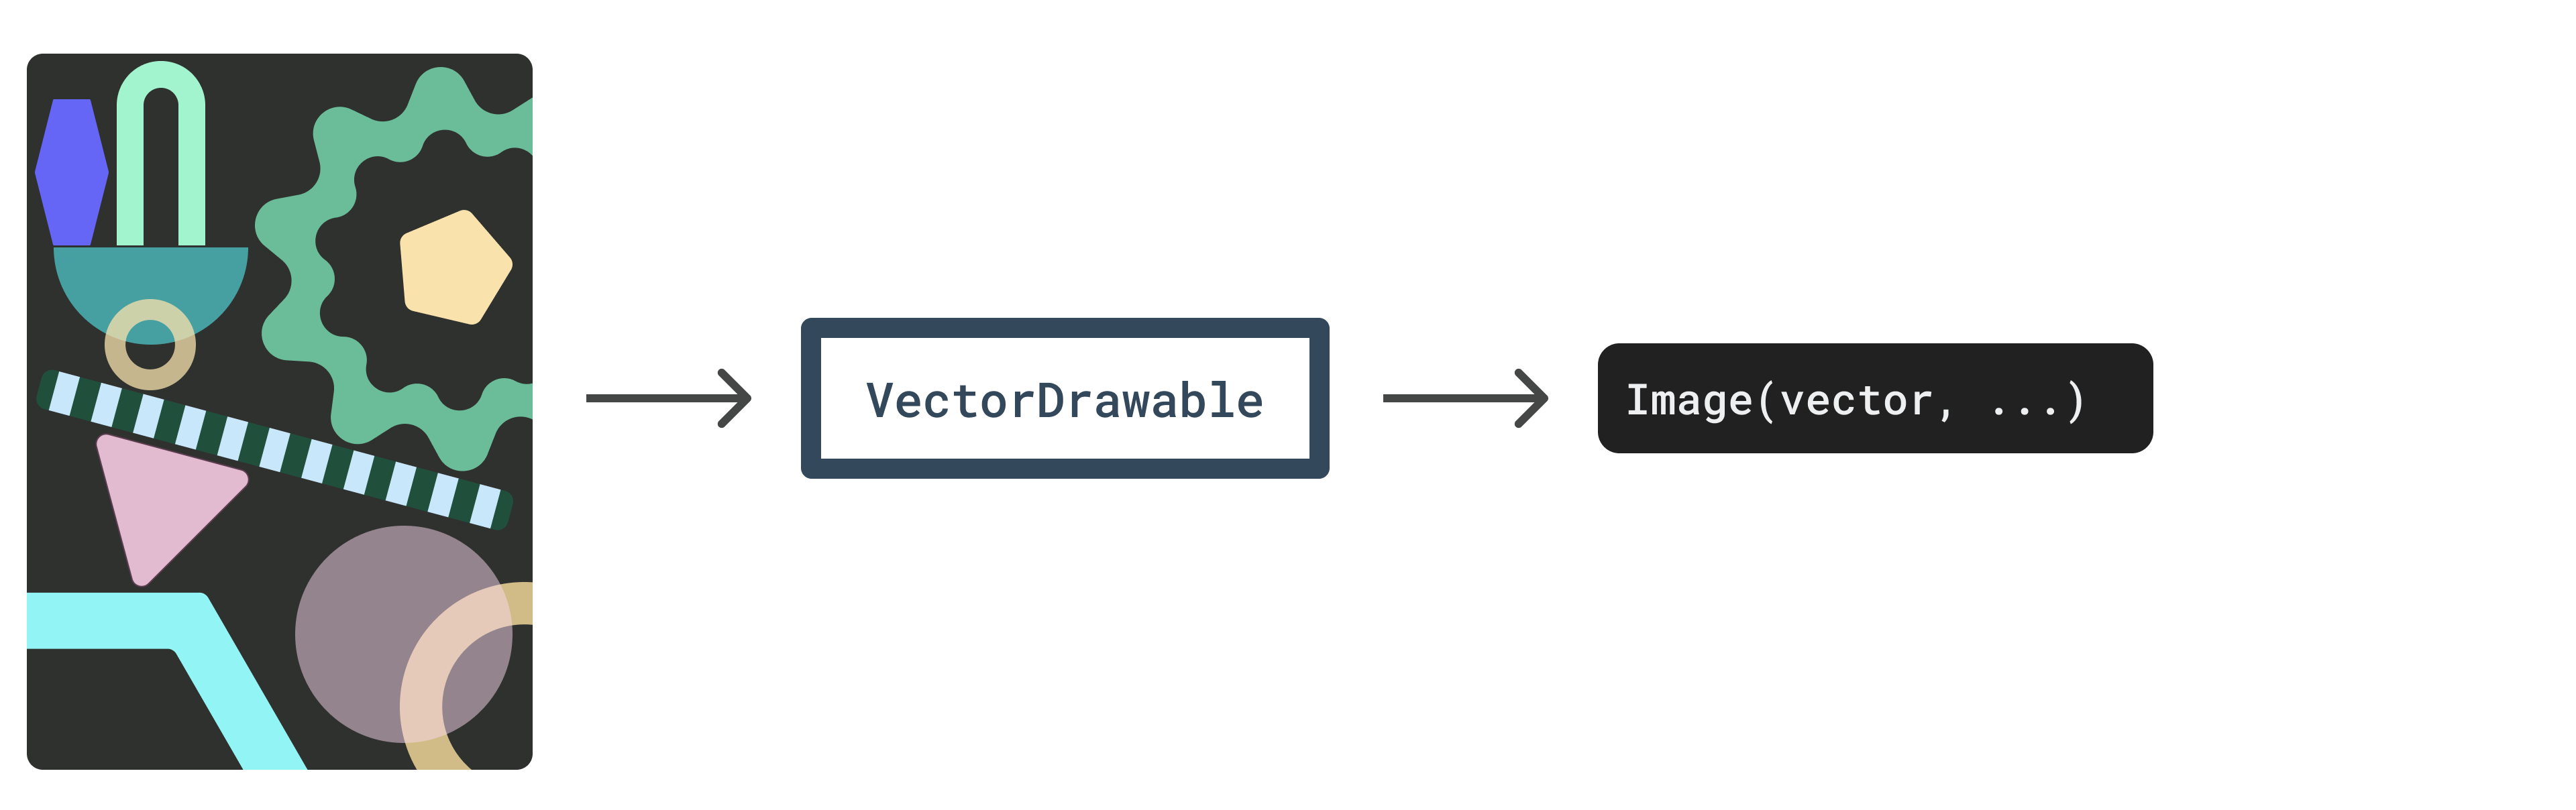 Diagramm – Vektorebenen in VectorDrawable zu einem Bild